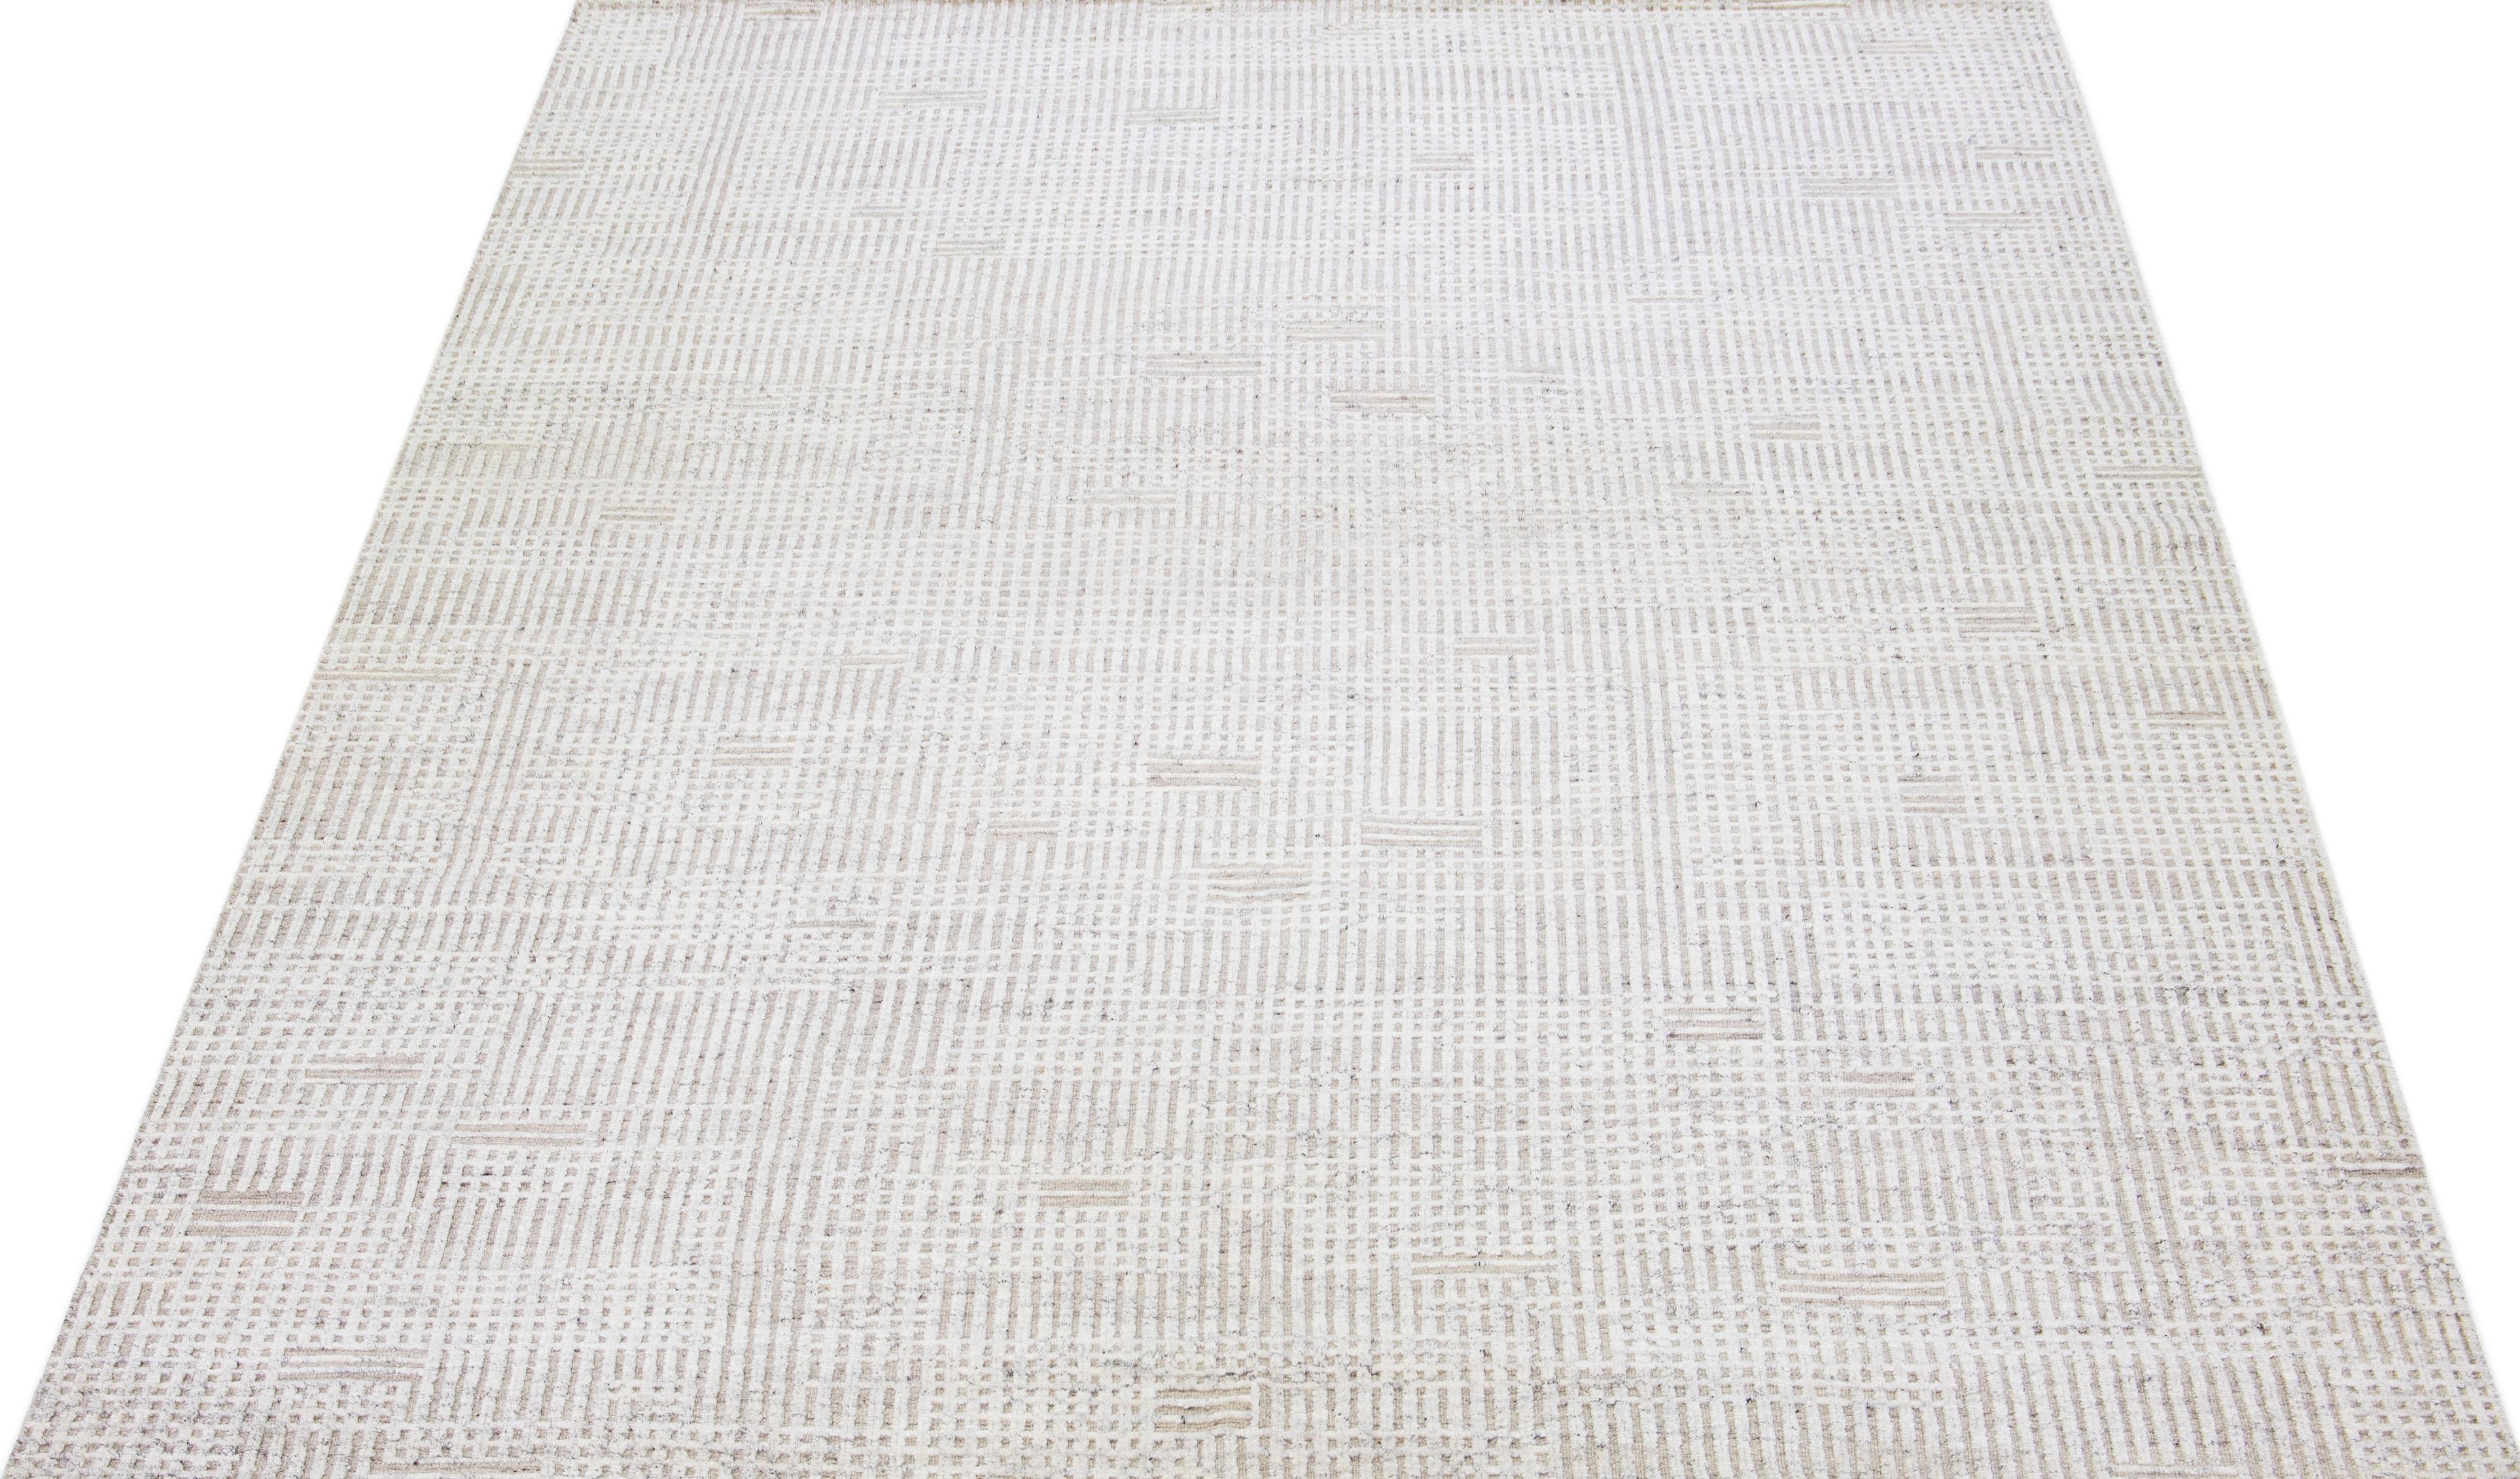 Magnifique tapis moderne en laine nouée à la main de style marocain avec un champ de couleur beige. Ce tapis fait partie de la collection Safi d'Apadana et présente un design minimaliste en blanc et gris.

Ce tapis mesure : 10'2